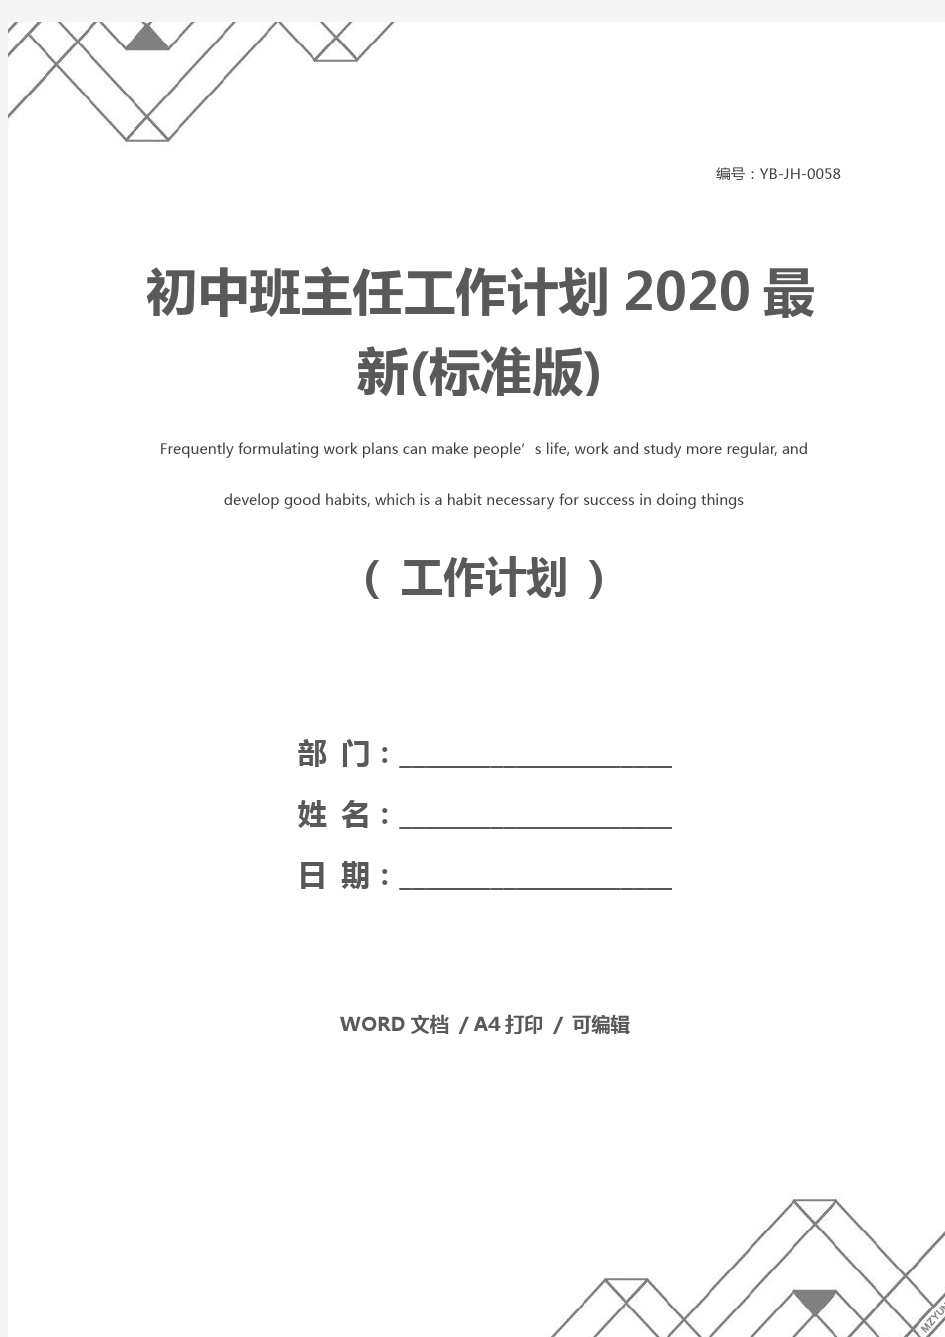 初中班主任工作计划2020最新(标准版)